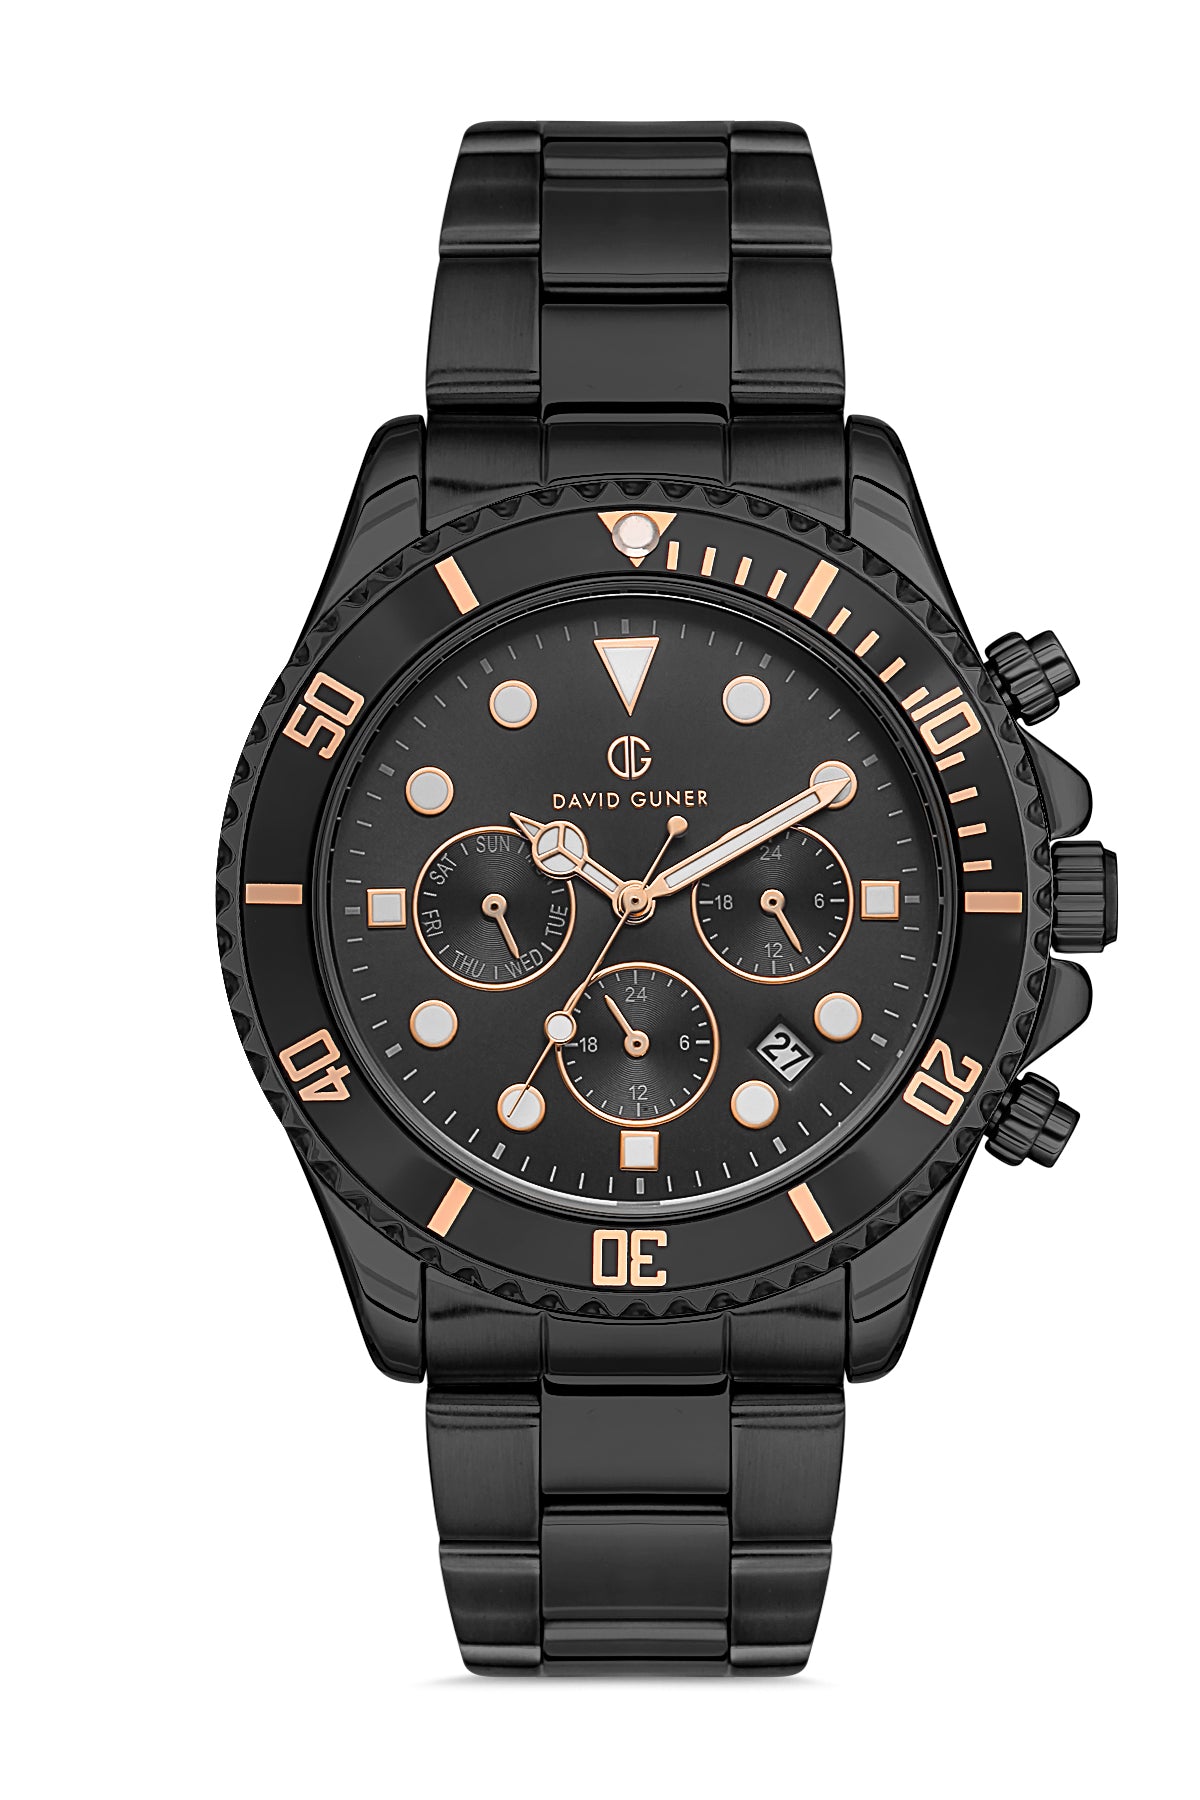 DAVID GUNER Black Coating Black Dial Multifunctional Men's Wristwatch